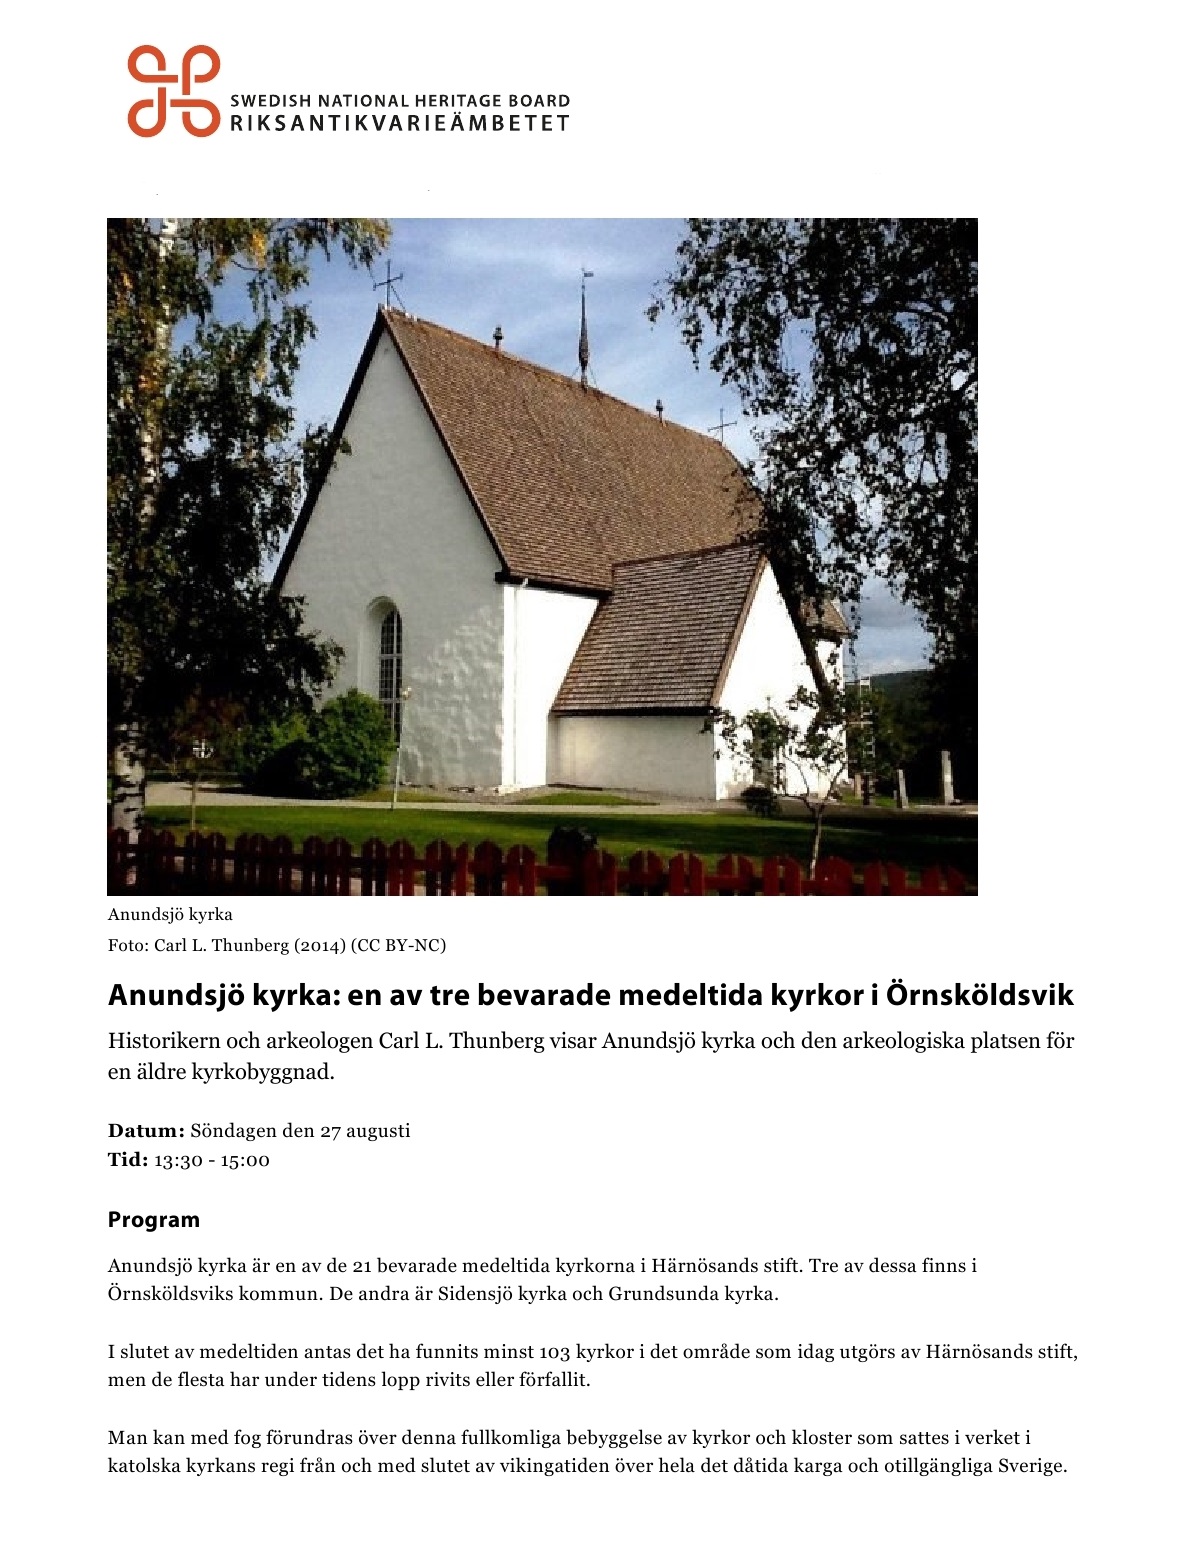 (RAÄ) Anundsjö kyrka; en av tre bevarade medeltida kyrkor i Örnsköldsvik1